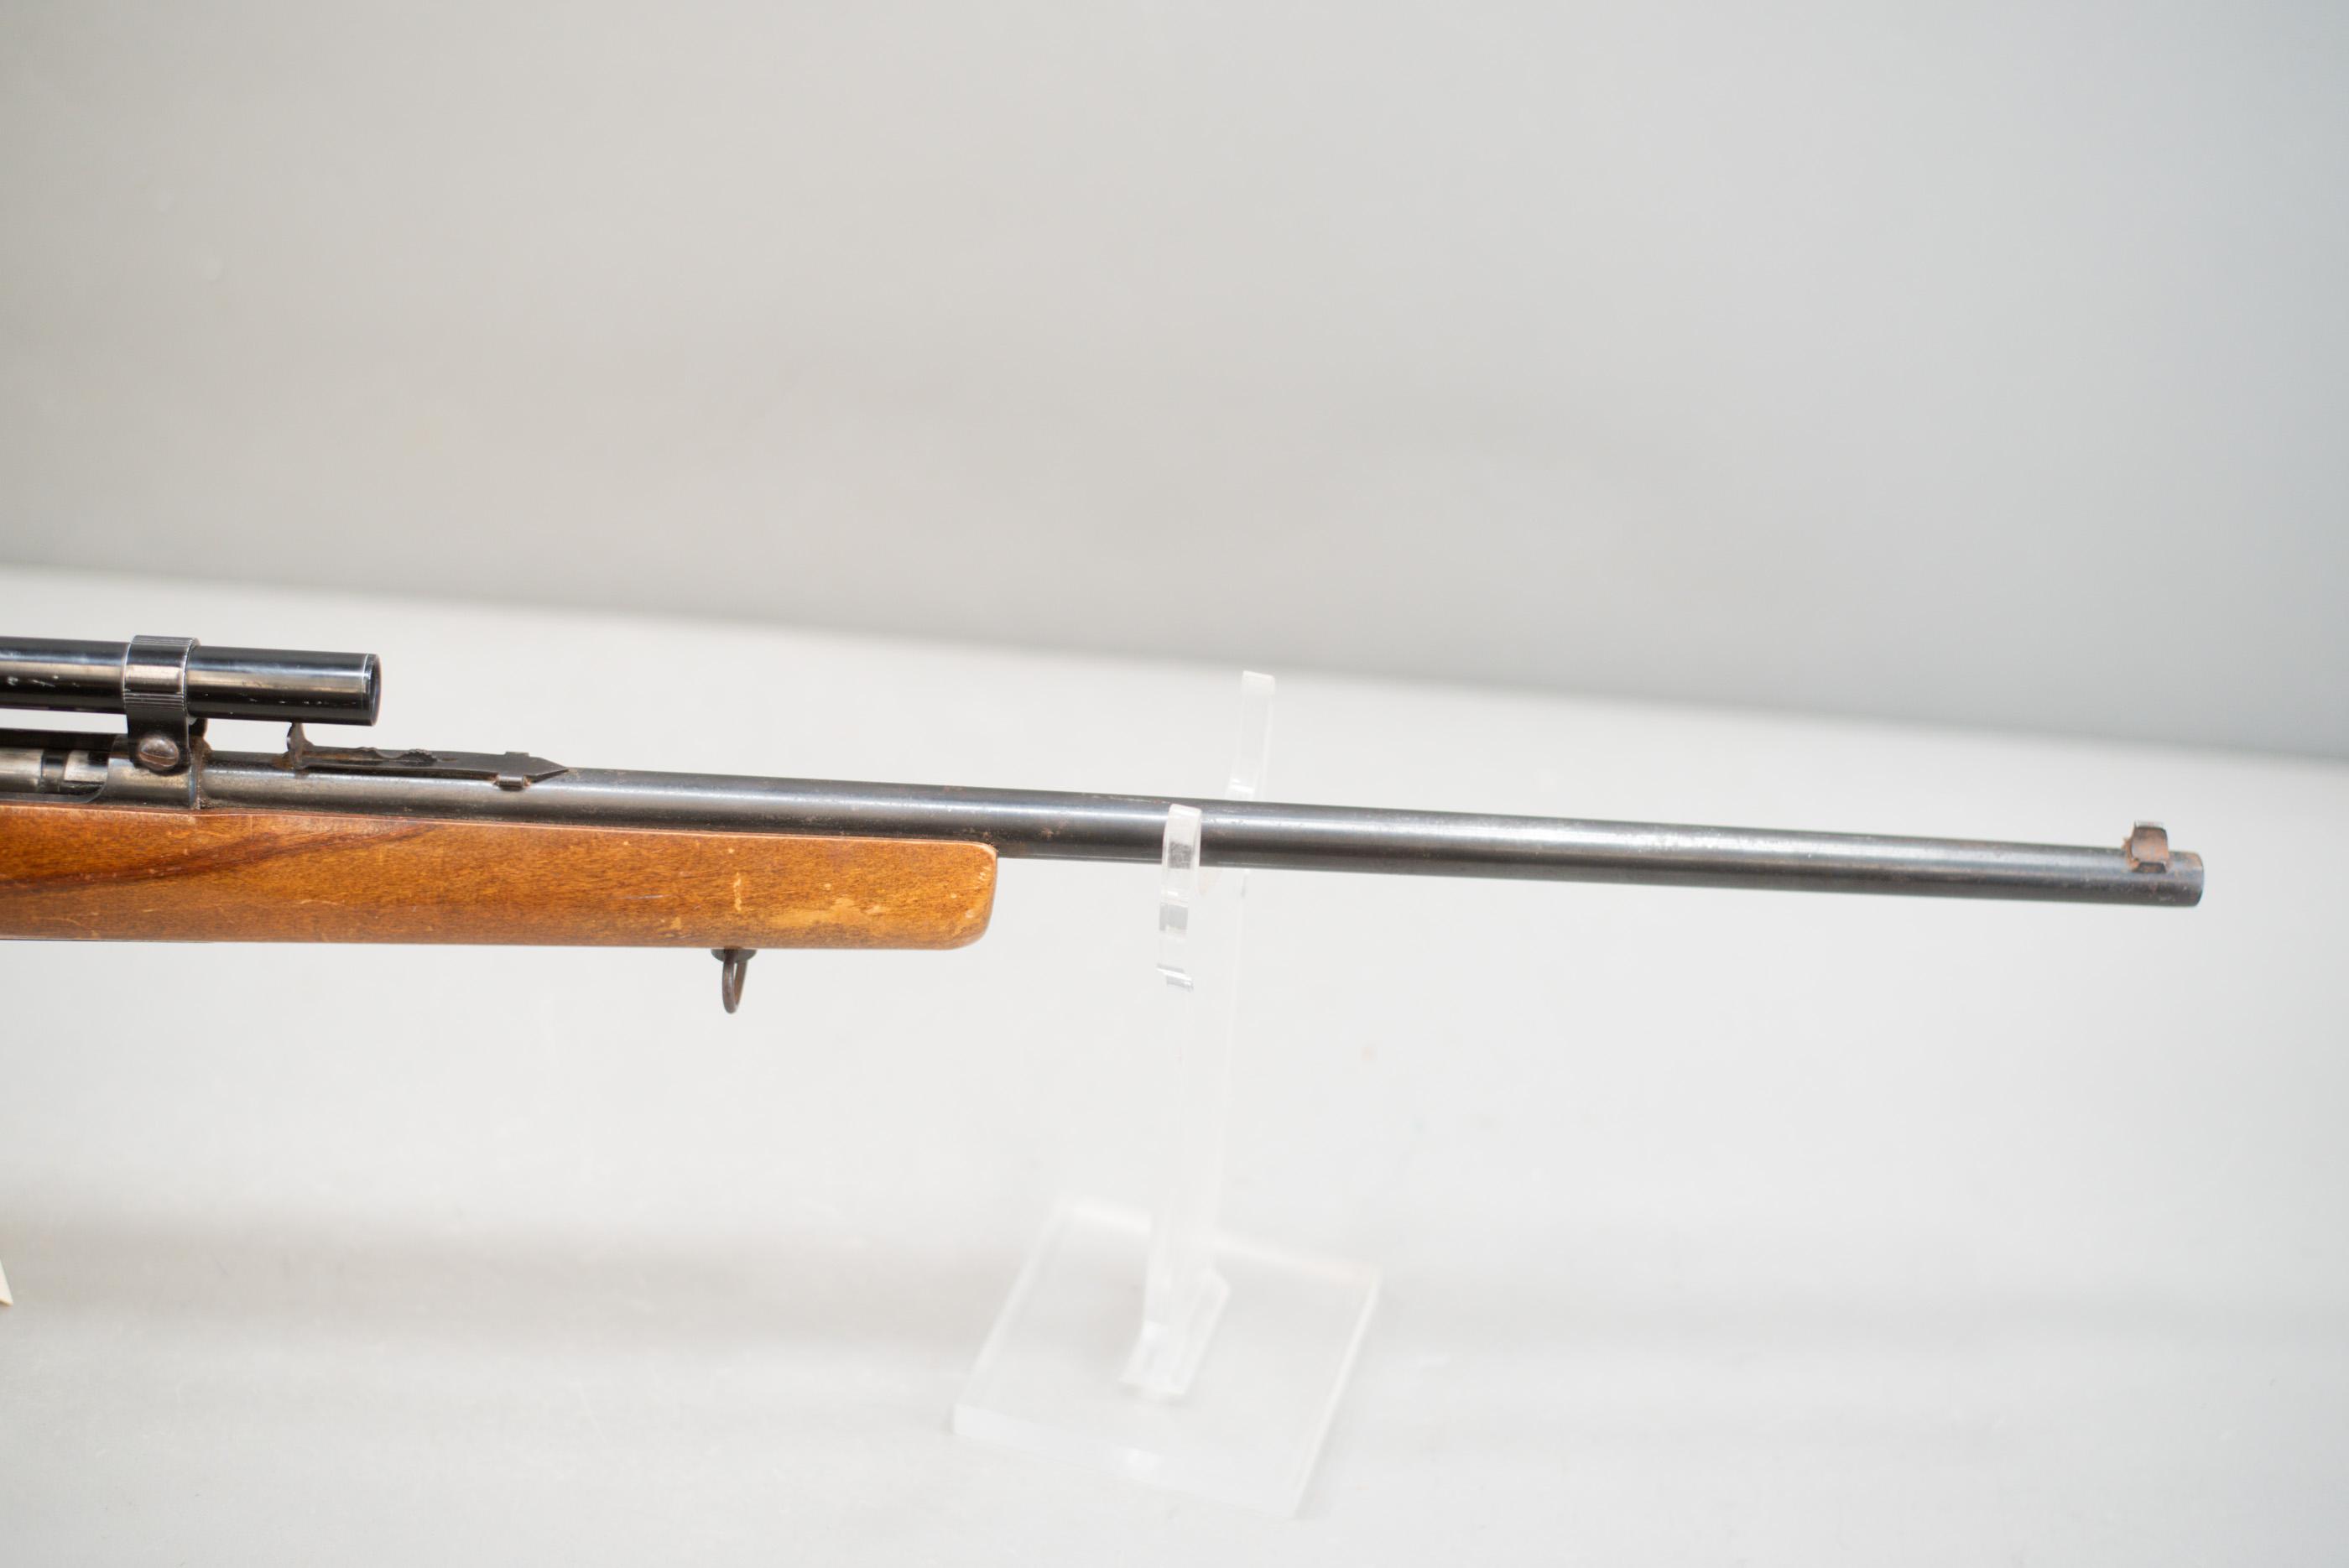 (R) Glenfield Model 25 .22S.L.LR Rifle